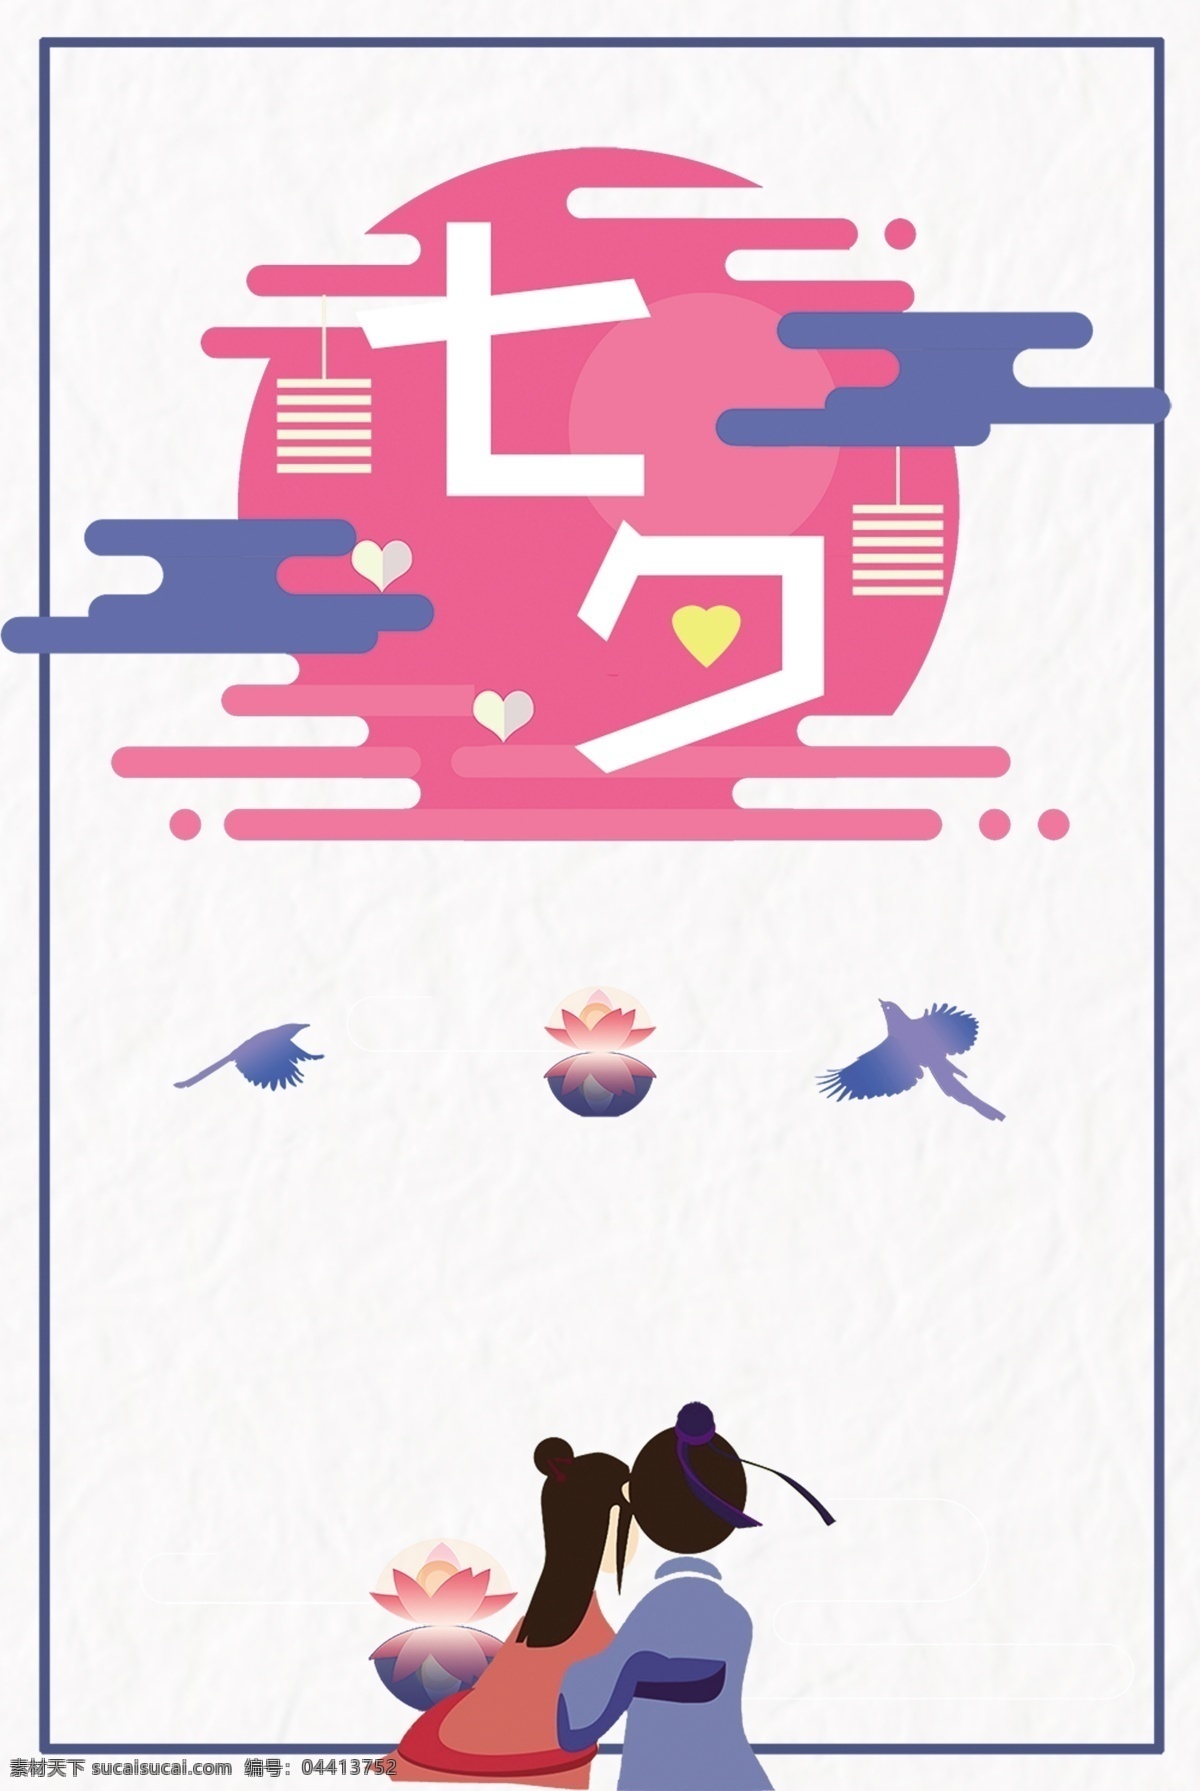 七夕 简约 人物 海报 背景 图 蓝色 粉色 情侣 底纹 喜鹊 边框 图纹